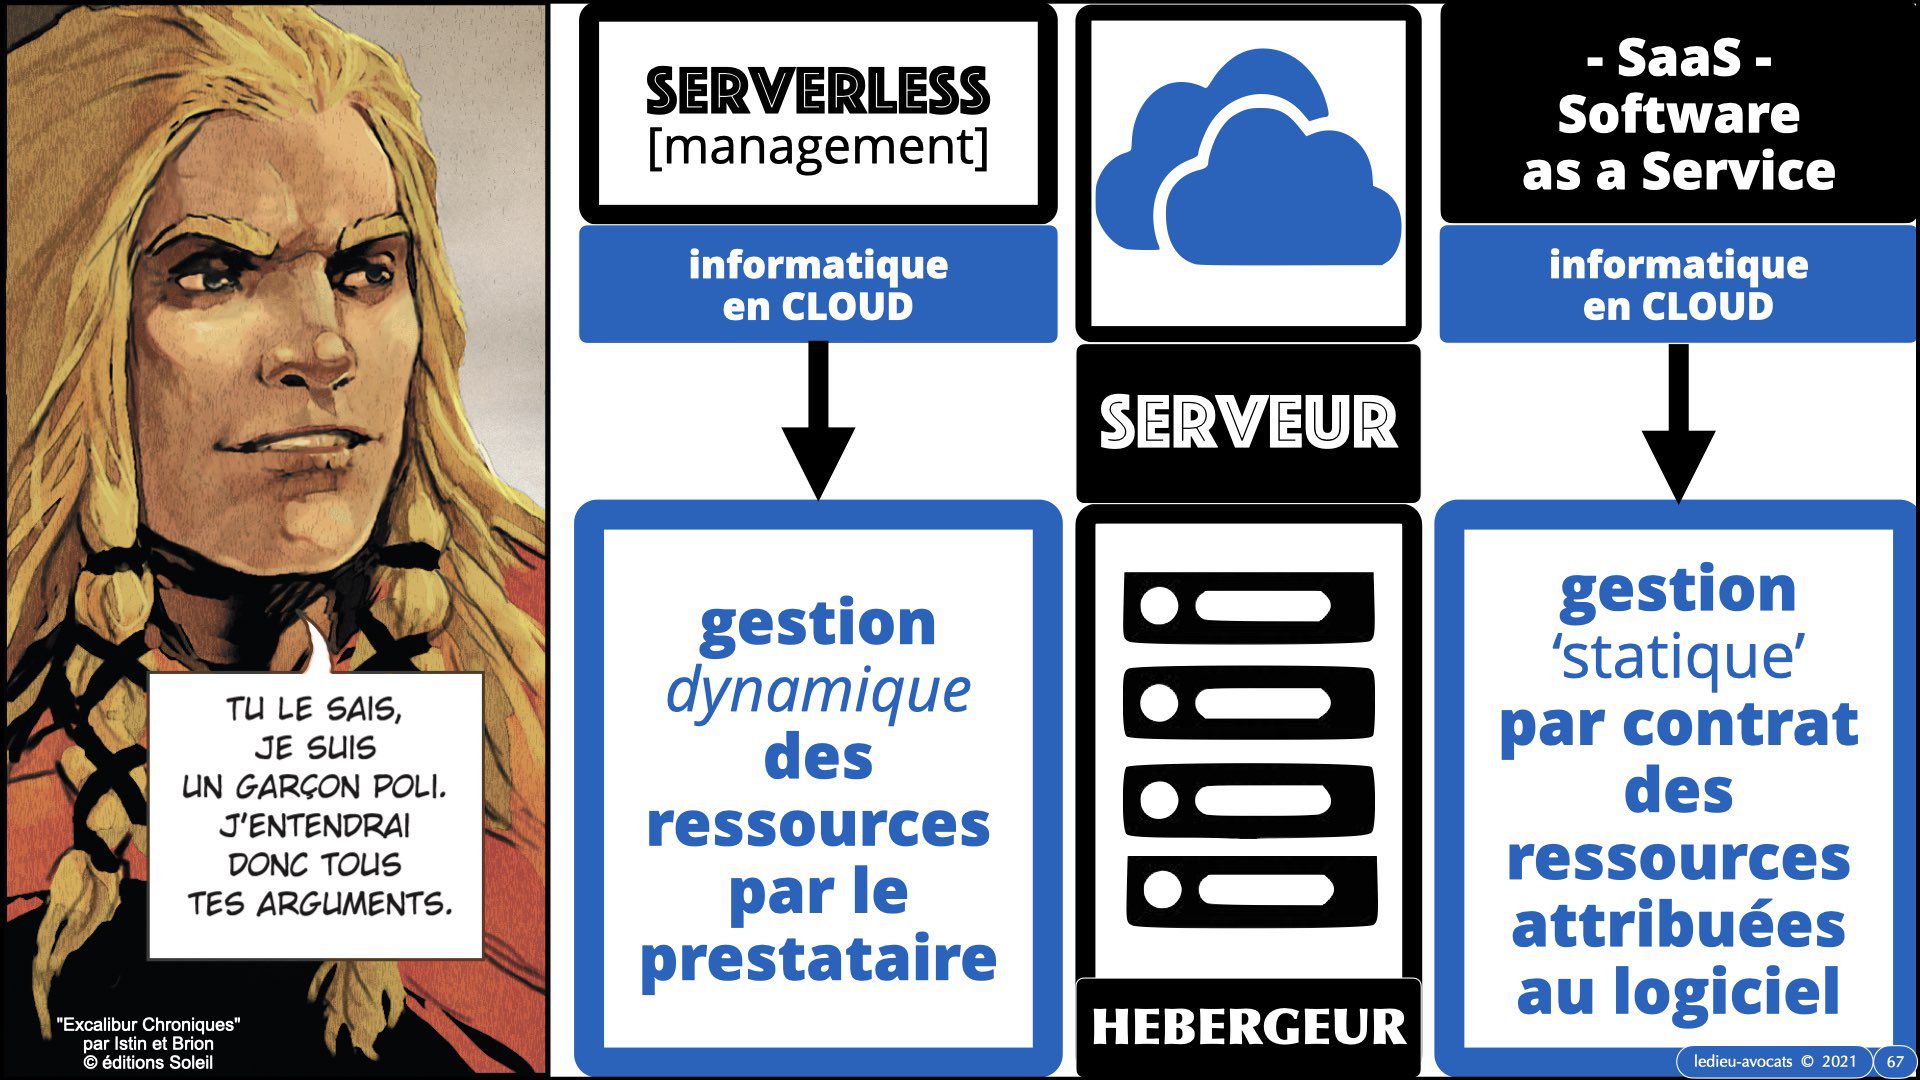 343 service LOGICIEL SaaS Software-as-a-Service cloud computing © Ledieu-Avocats technique droit numerique 30-08-2021.067